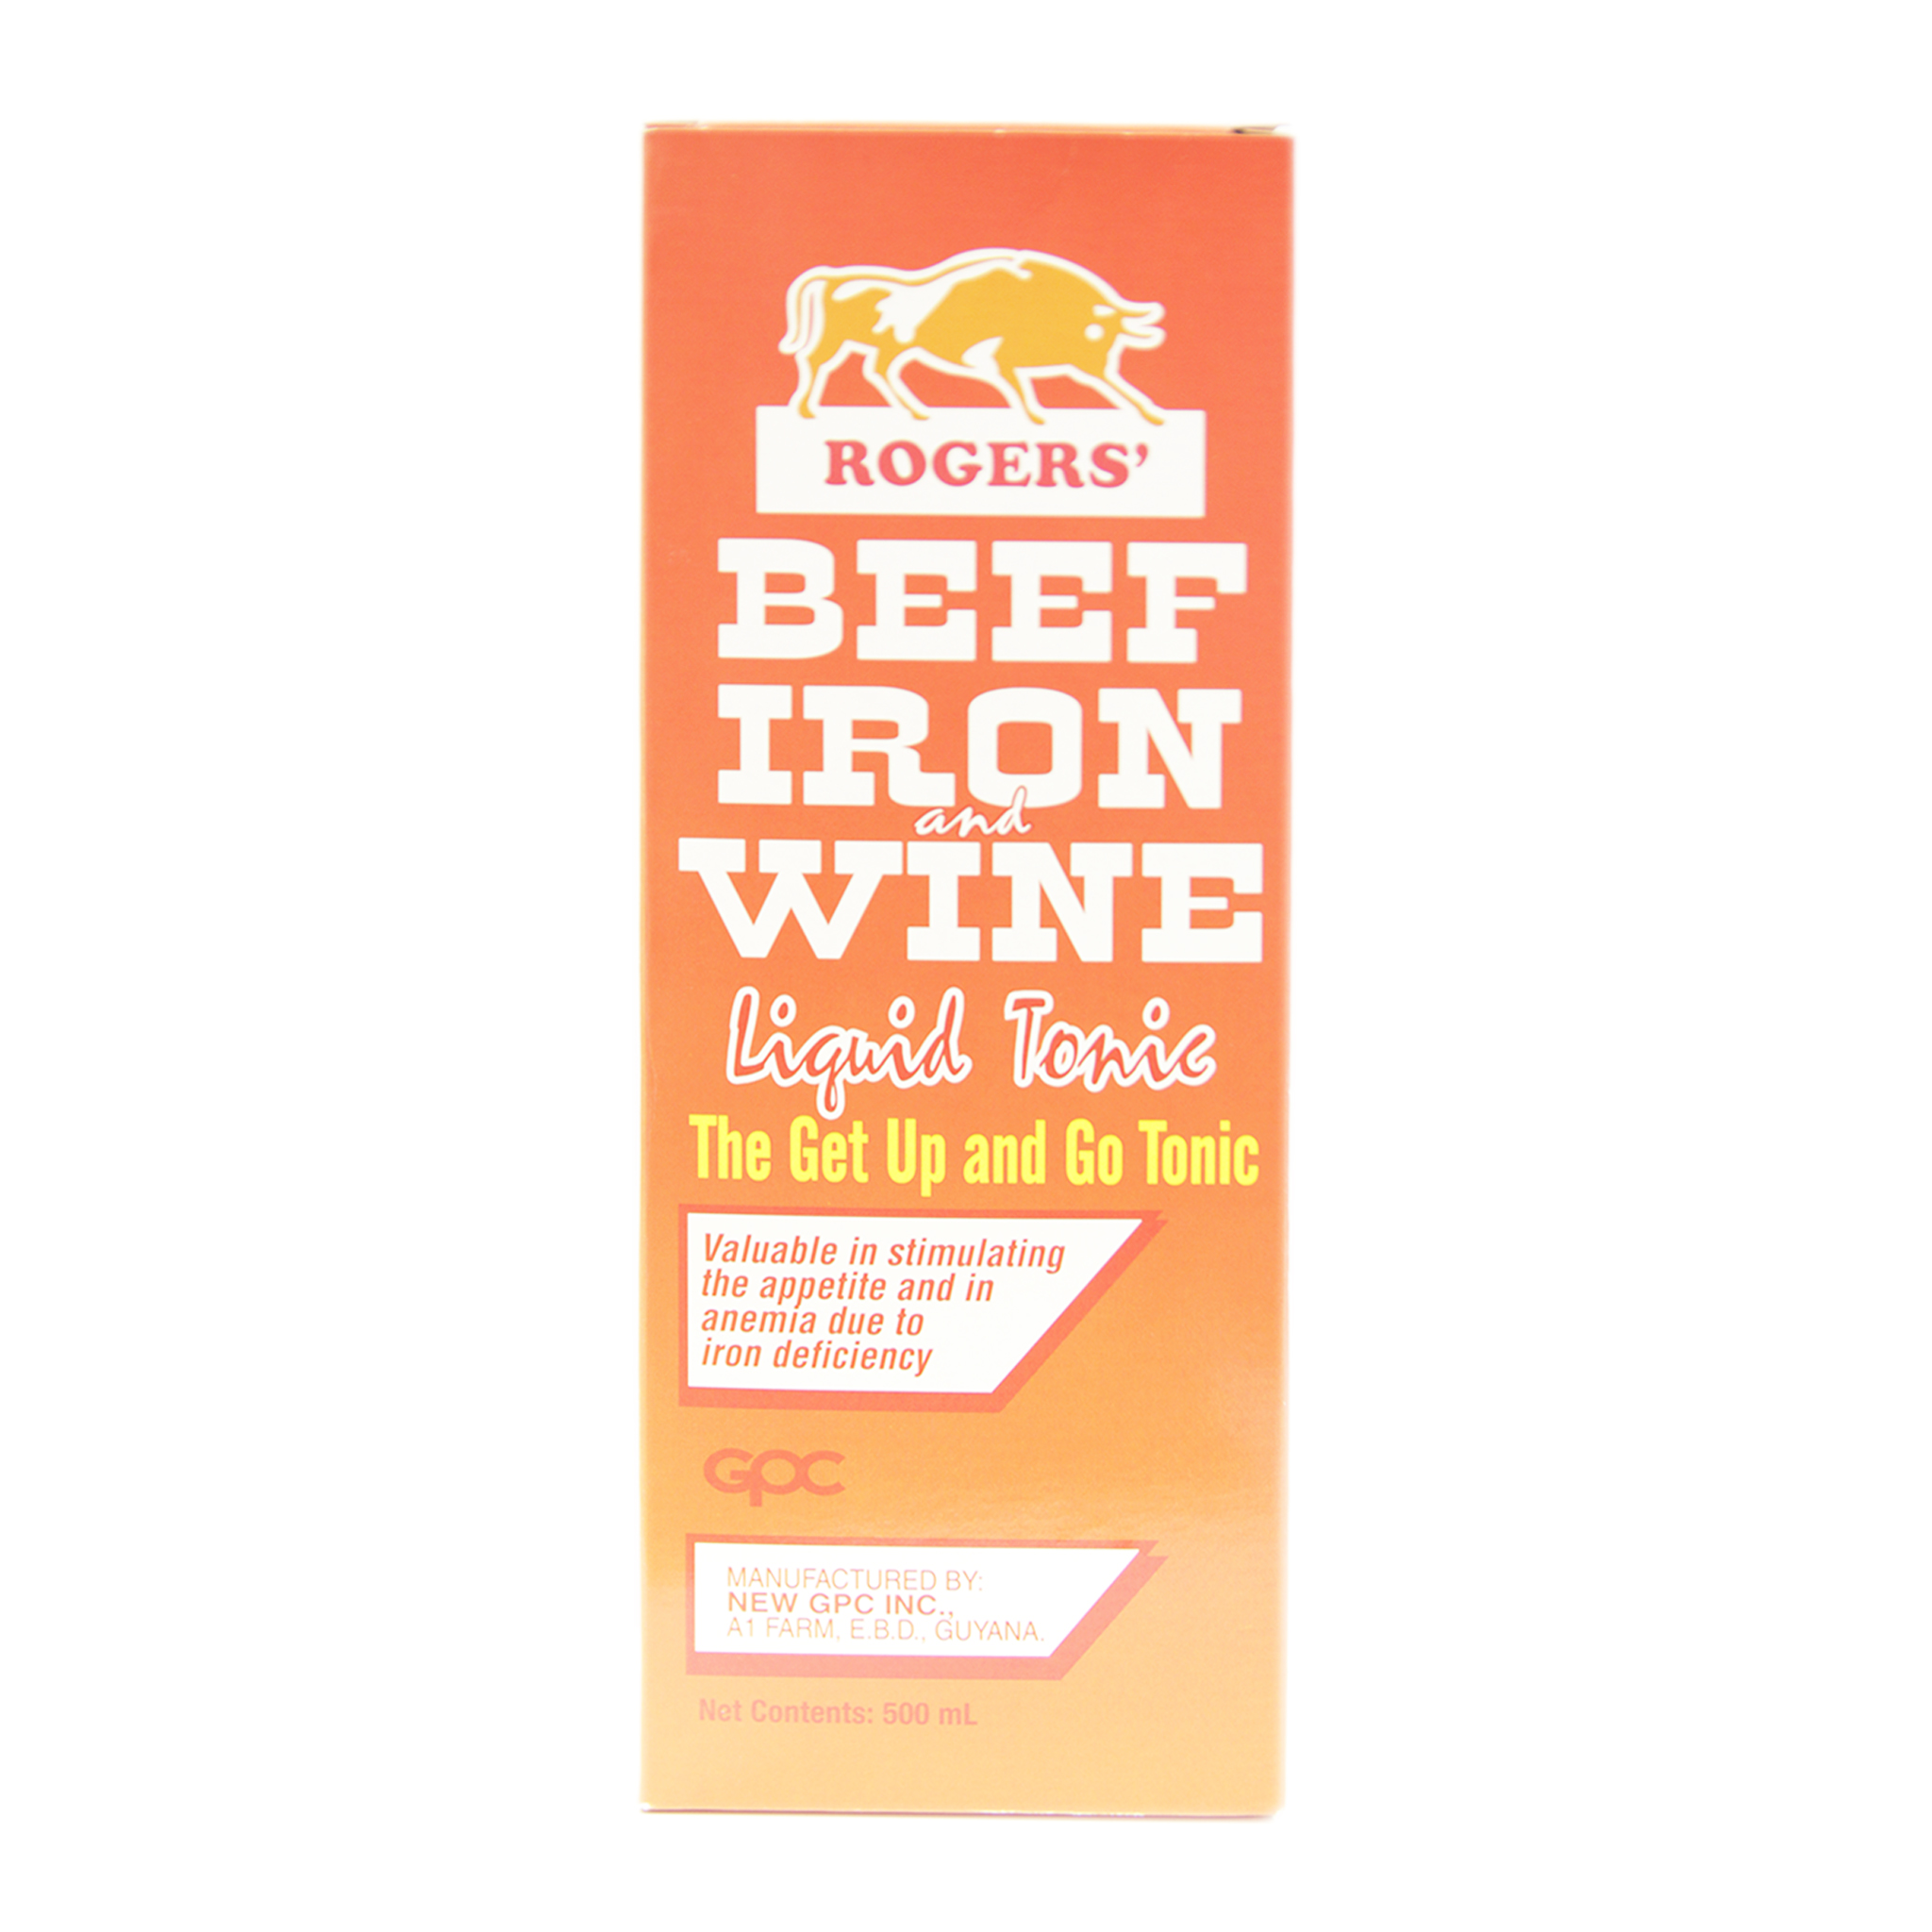 Rogers Beef Iron Wine Tonic 500ML